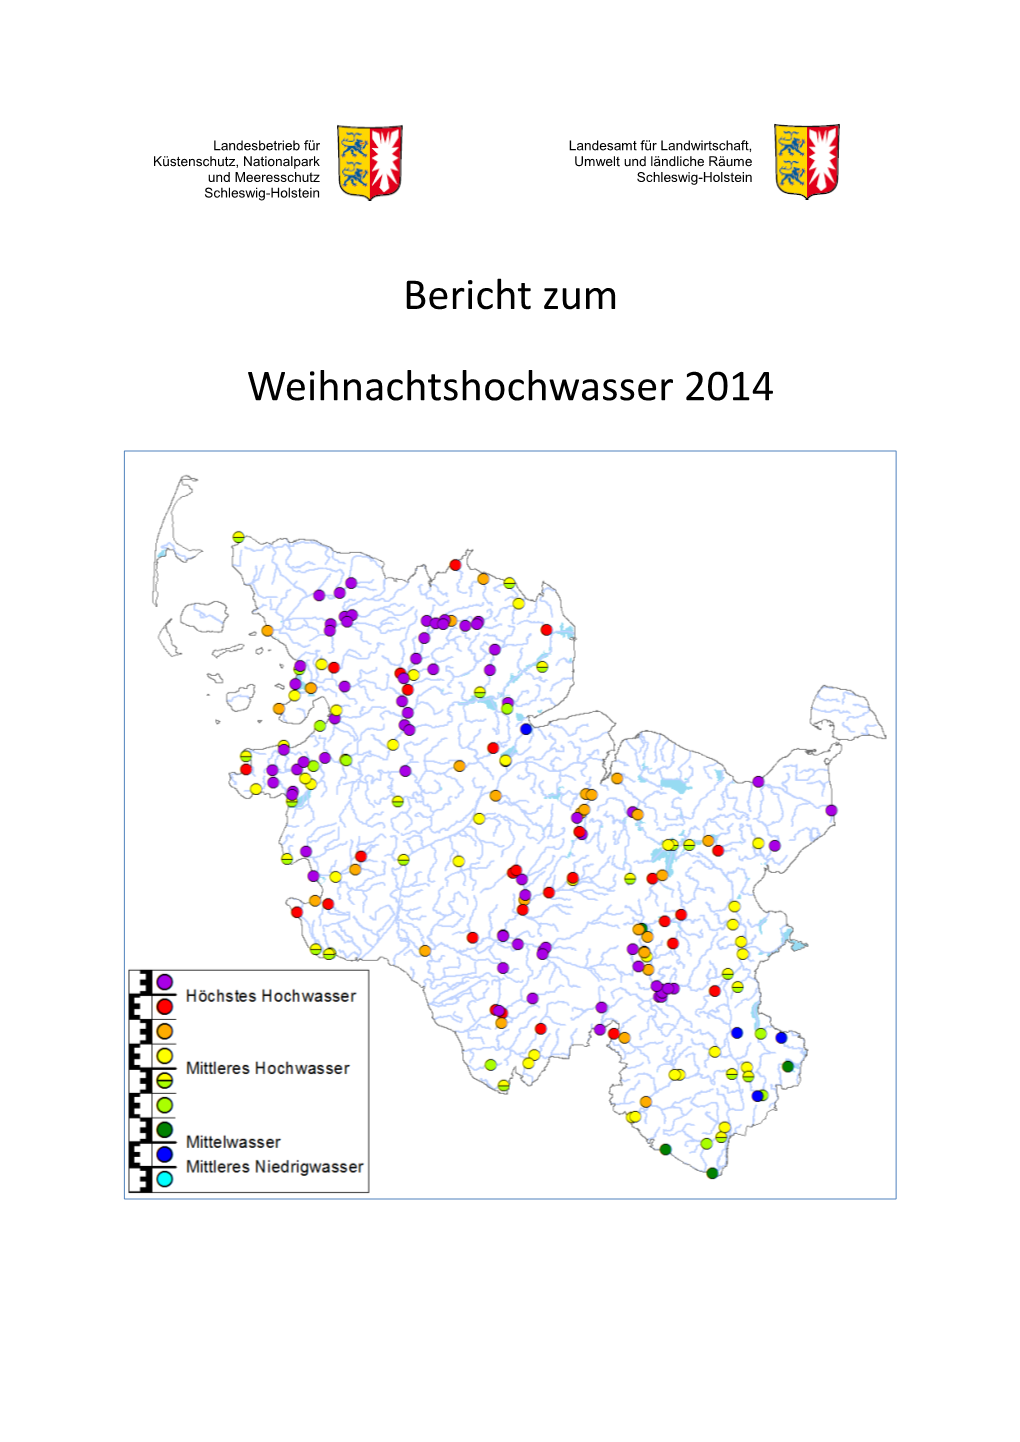 Bericht Zum Weihnachtshochwasser 2014 (PDF